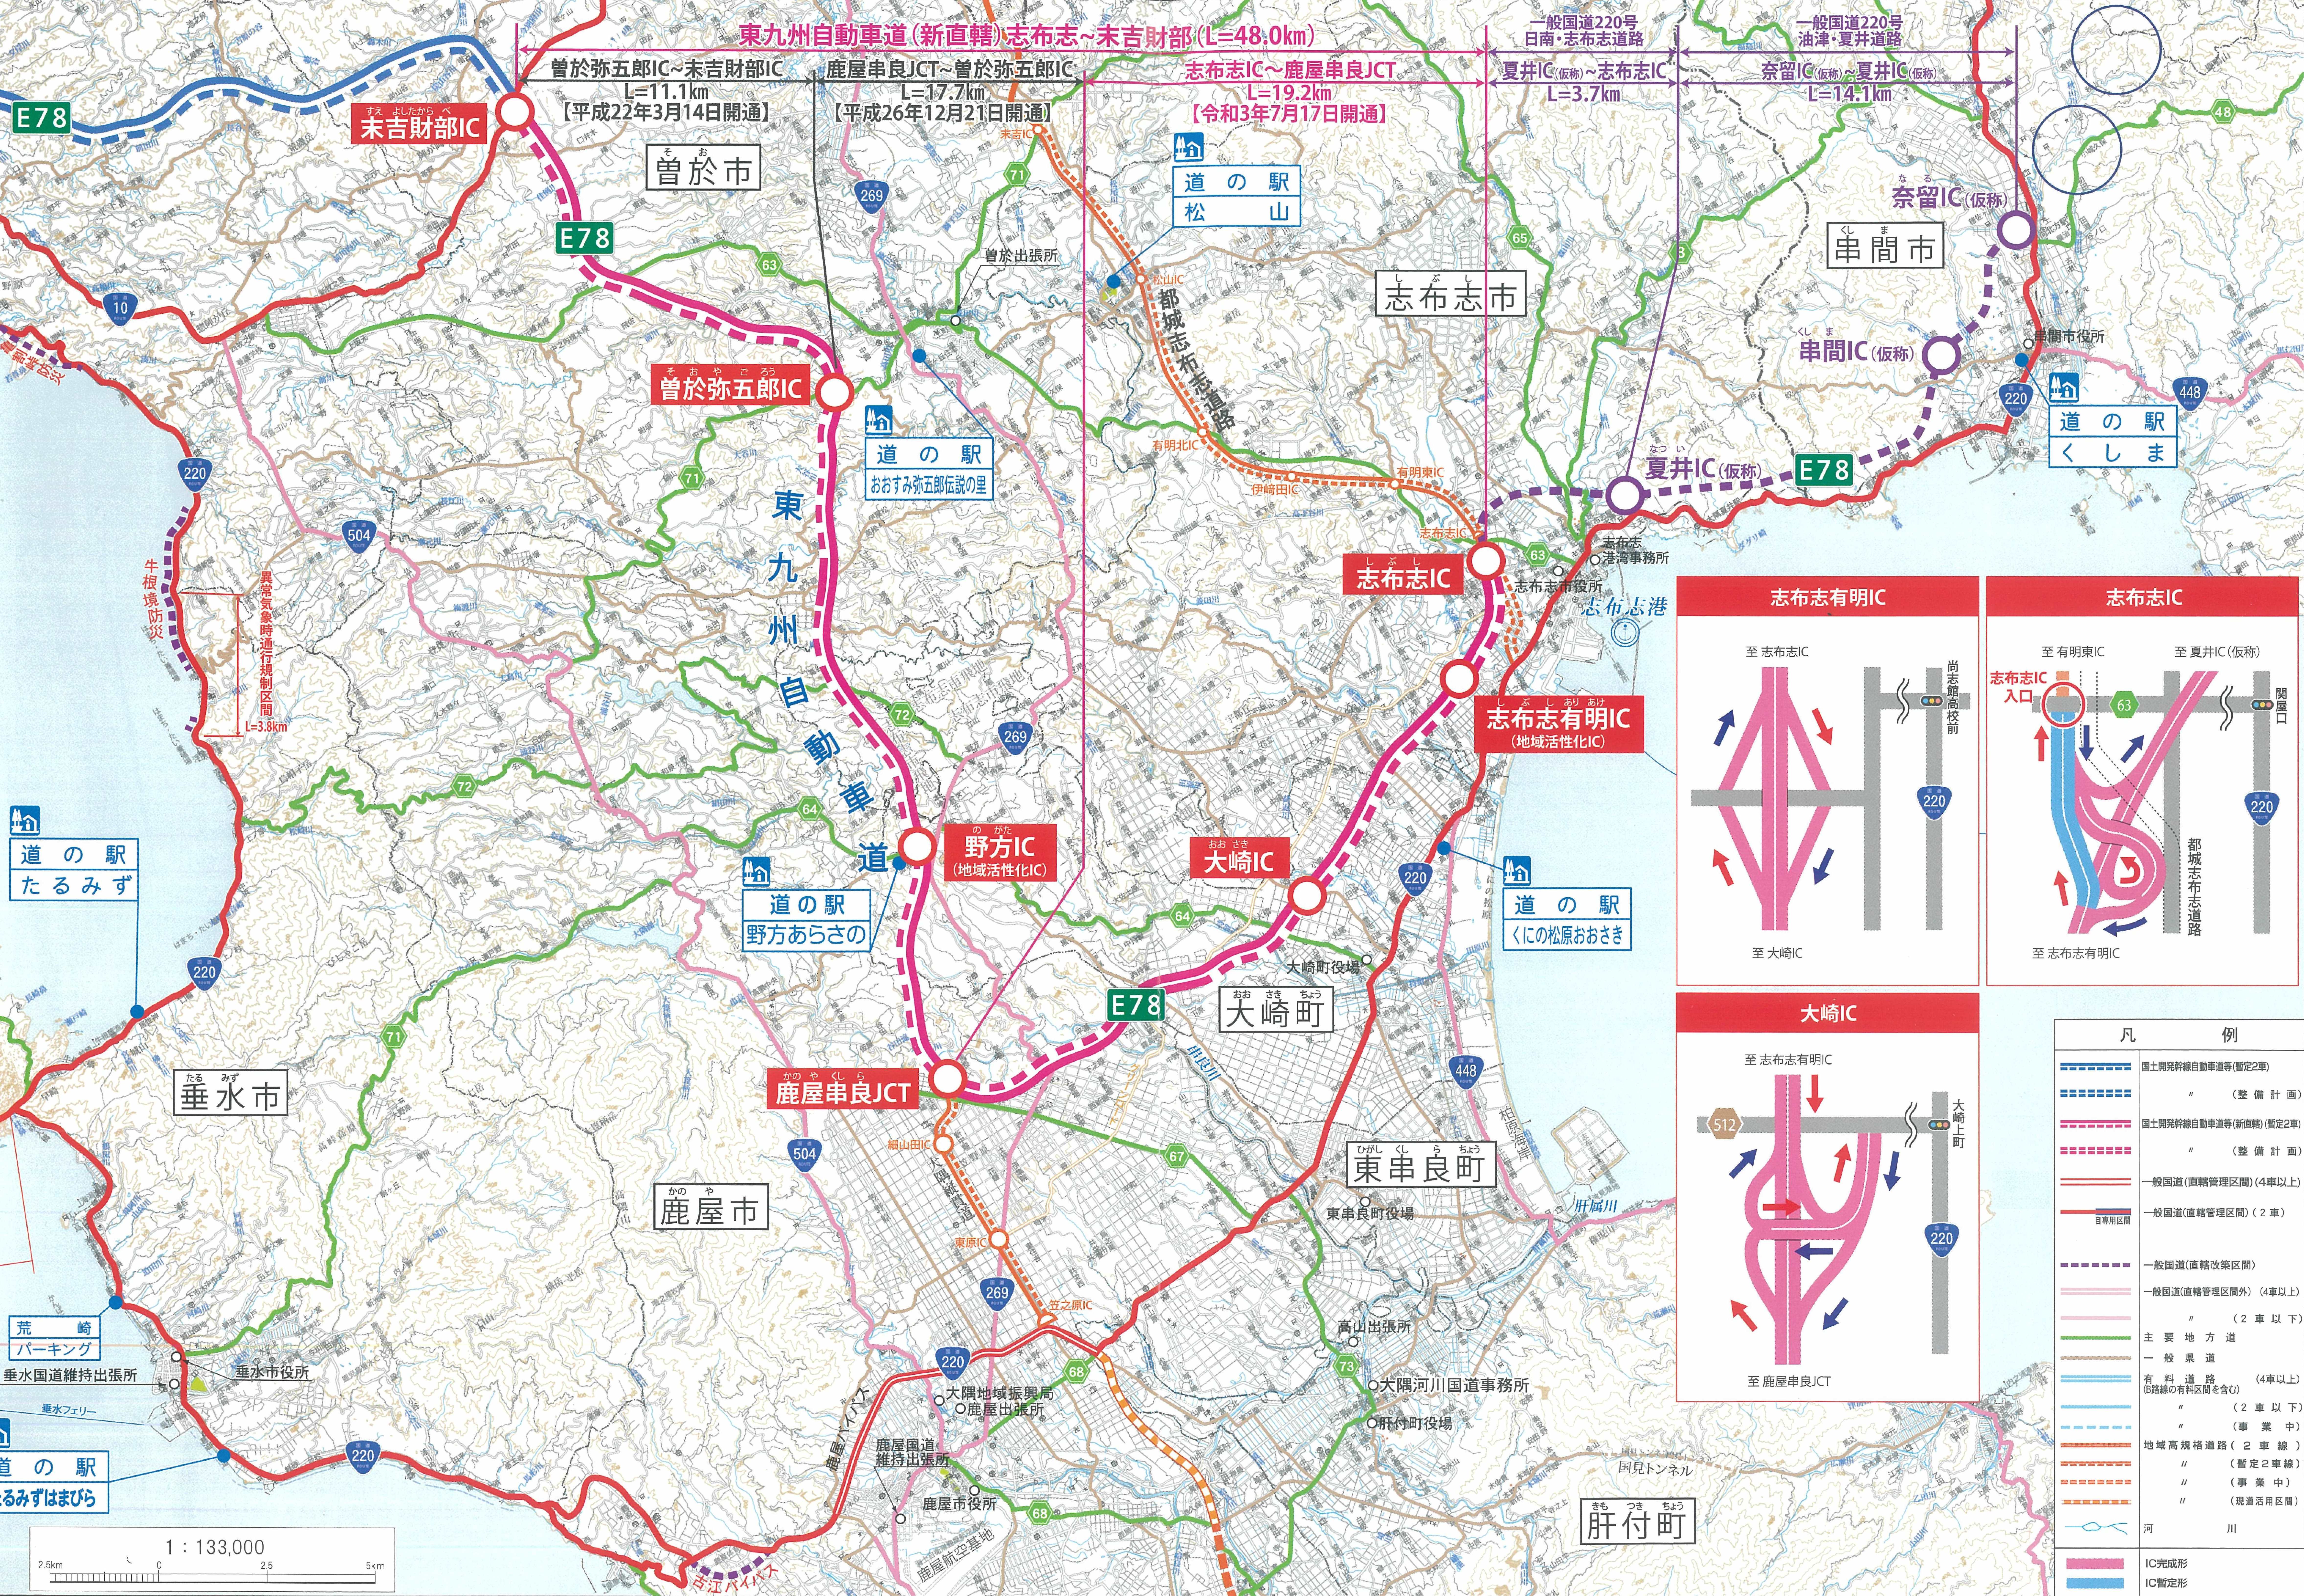 東九州自動車道網図を紹介する画像です